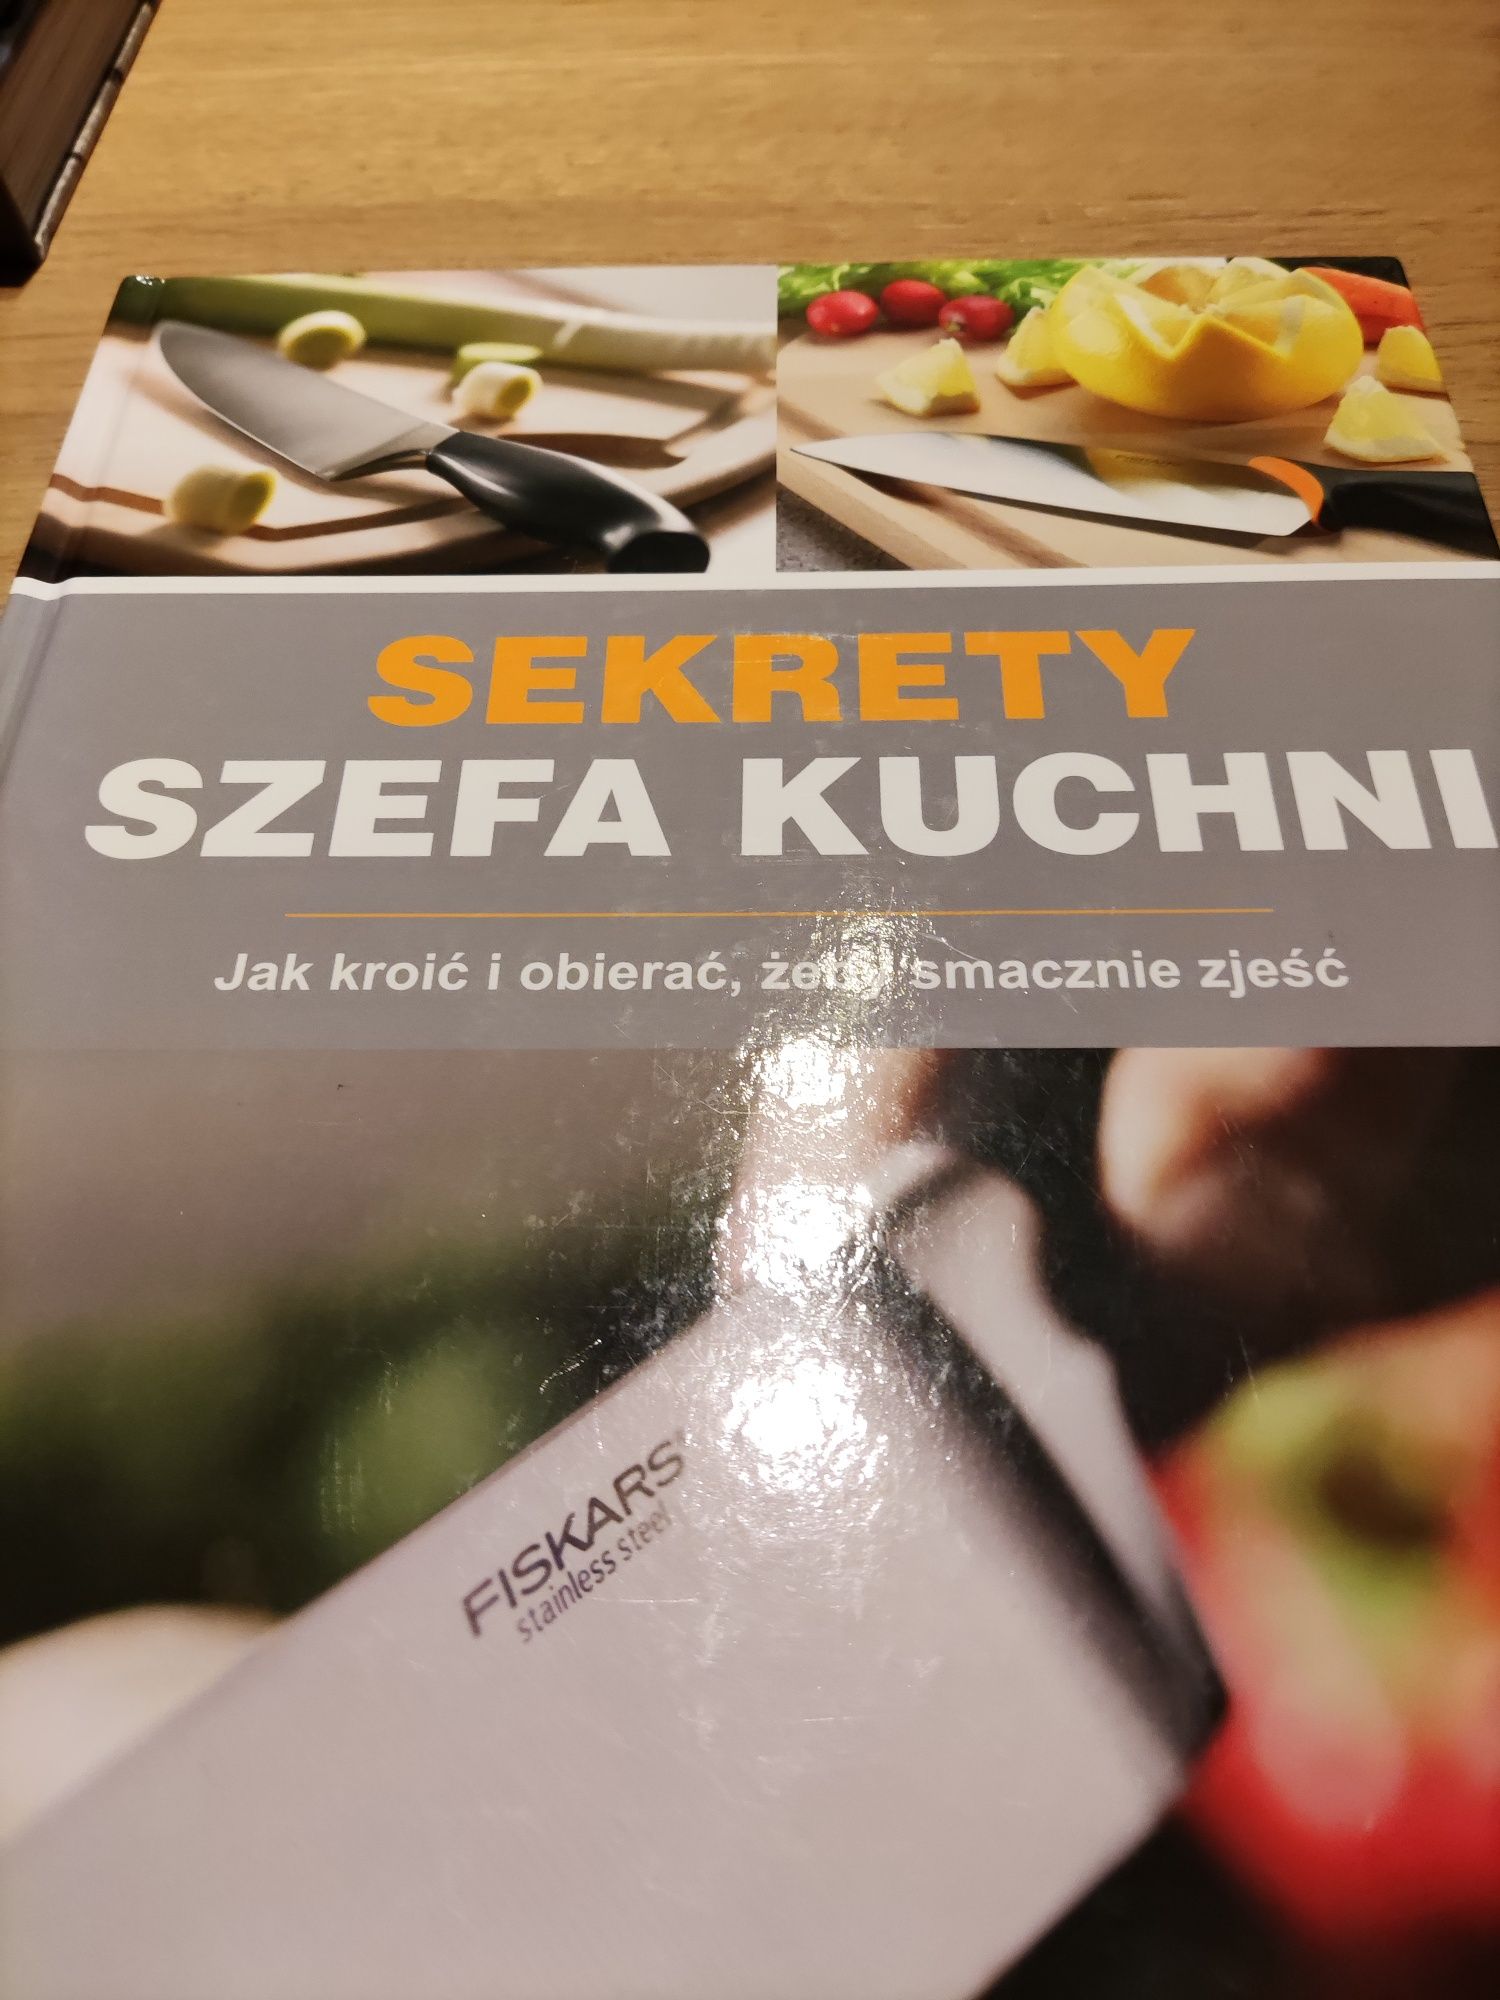 Sekrety szefa kuchni, książka kucharska gotowanie i krojenie